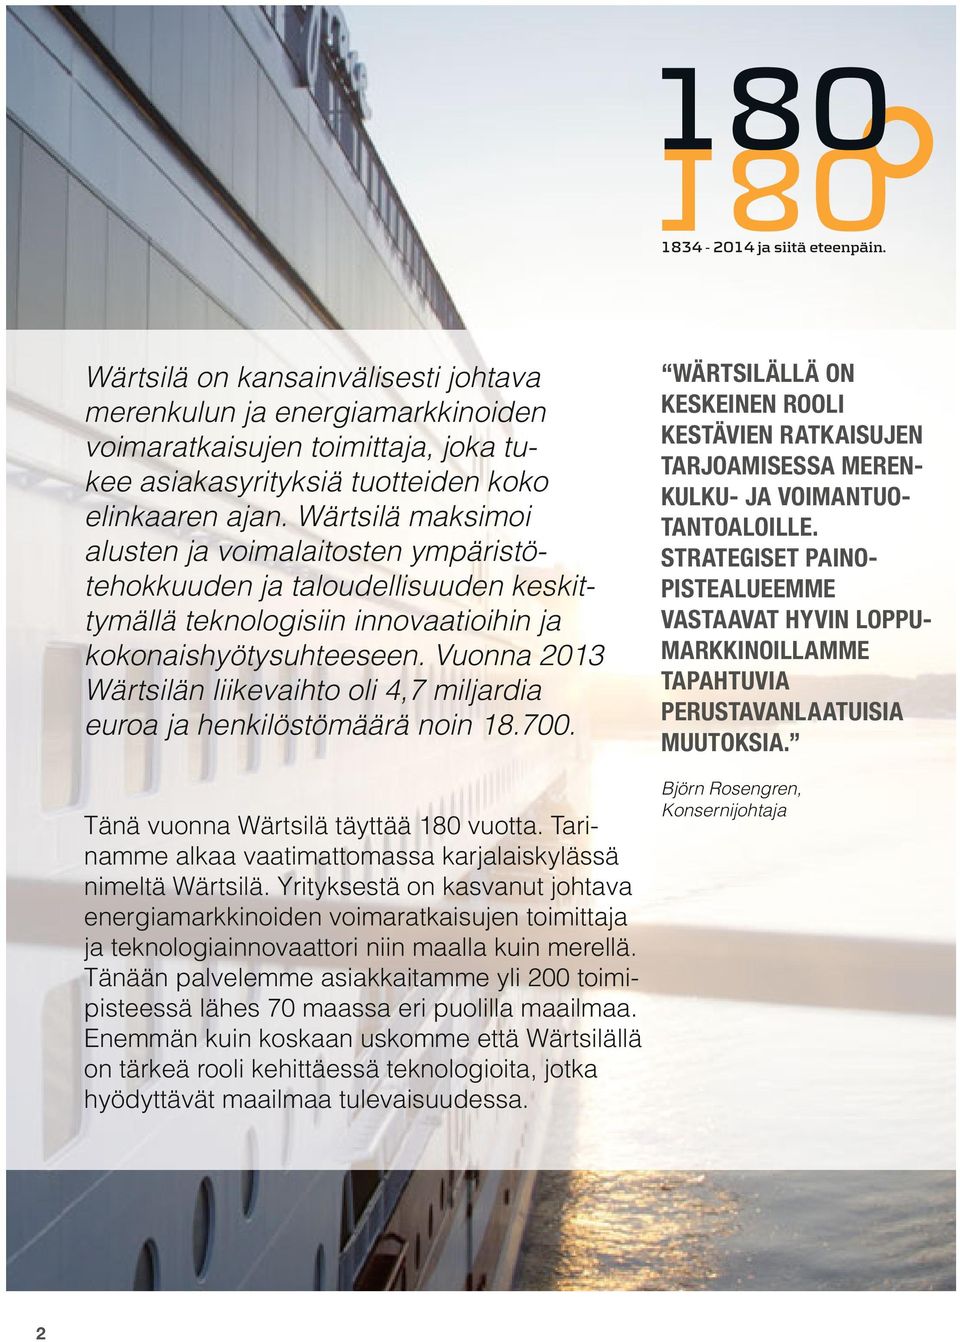 Vuonna 2013 Wärtsilän liikevaihto oli 4,7 miljardia euroa ja henkilöstömäärä noin 18.700. Tänä vuonna Wärtsilä täyttää 180 vuotta. Tarinamme alkaa vaatimattomassa karjalaiskylässä nimeltä Wärtsilä.